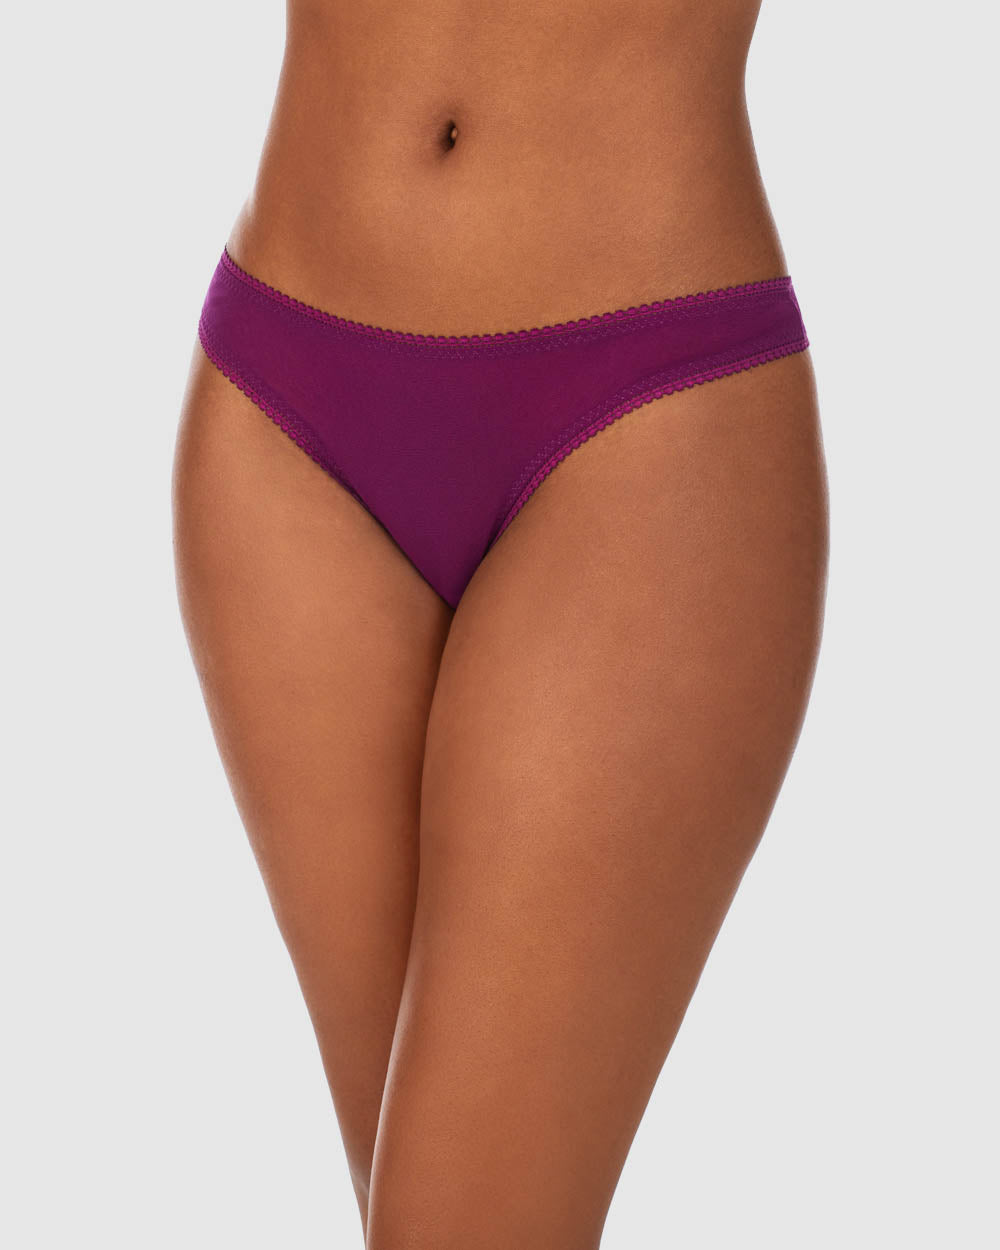 A lady wearing a Dark Purple Gossamer Mesh Hip G Thong Underwear